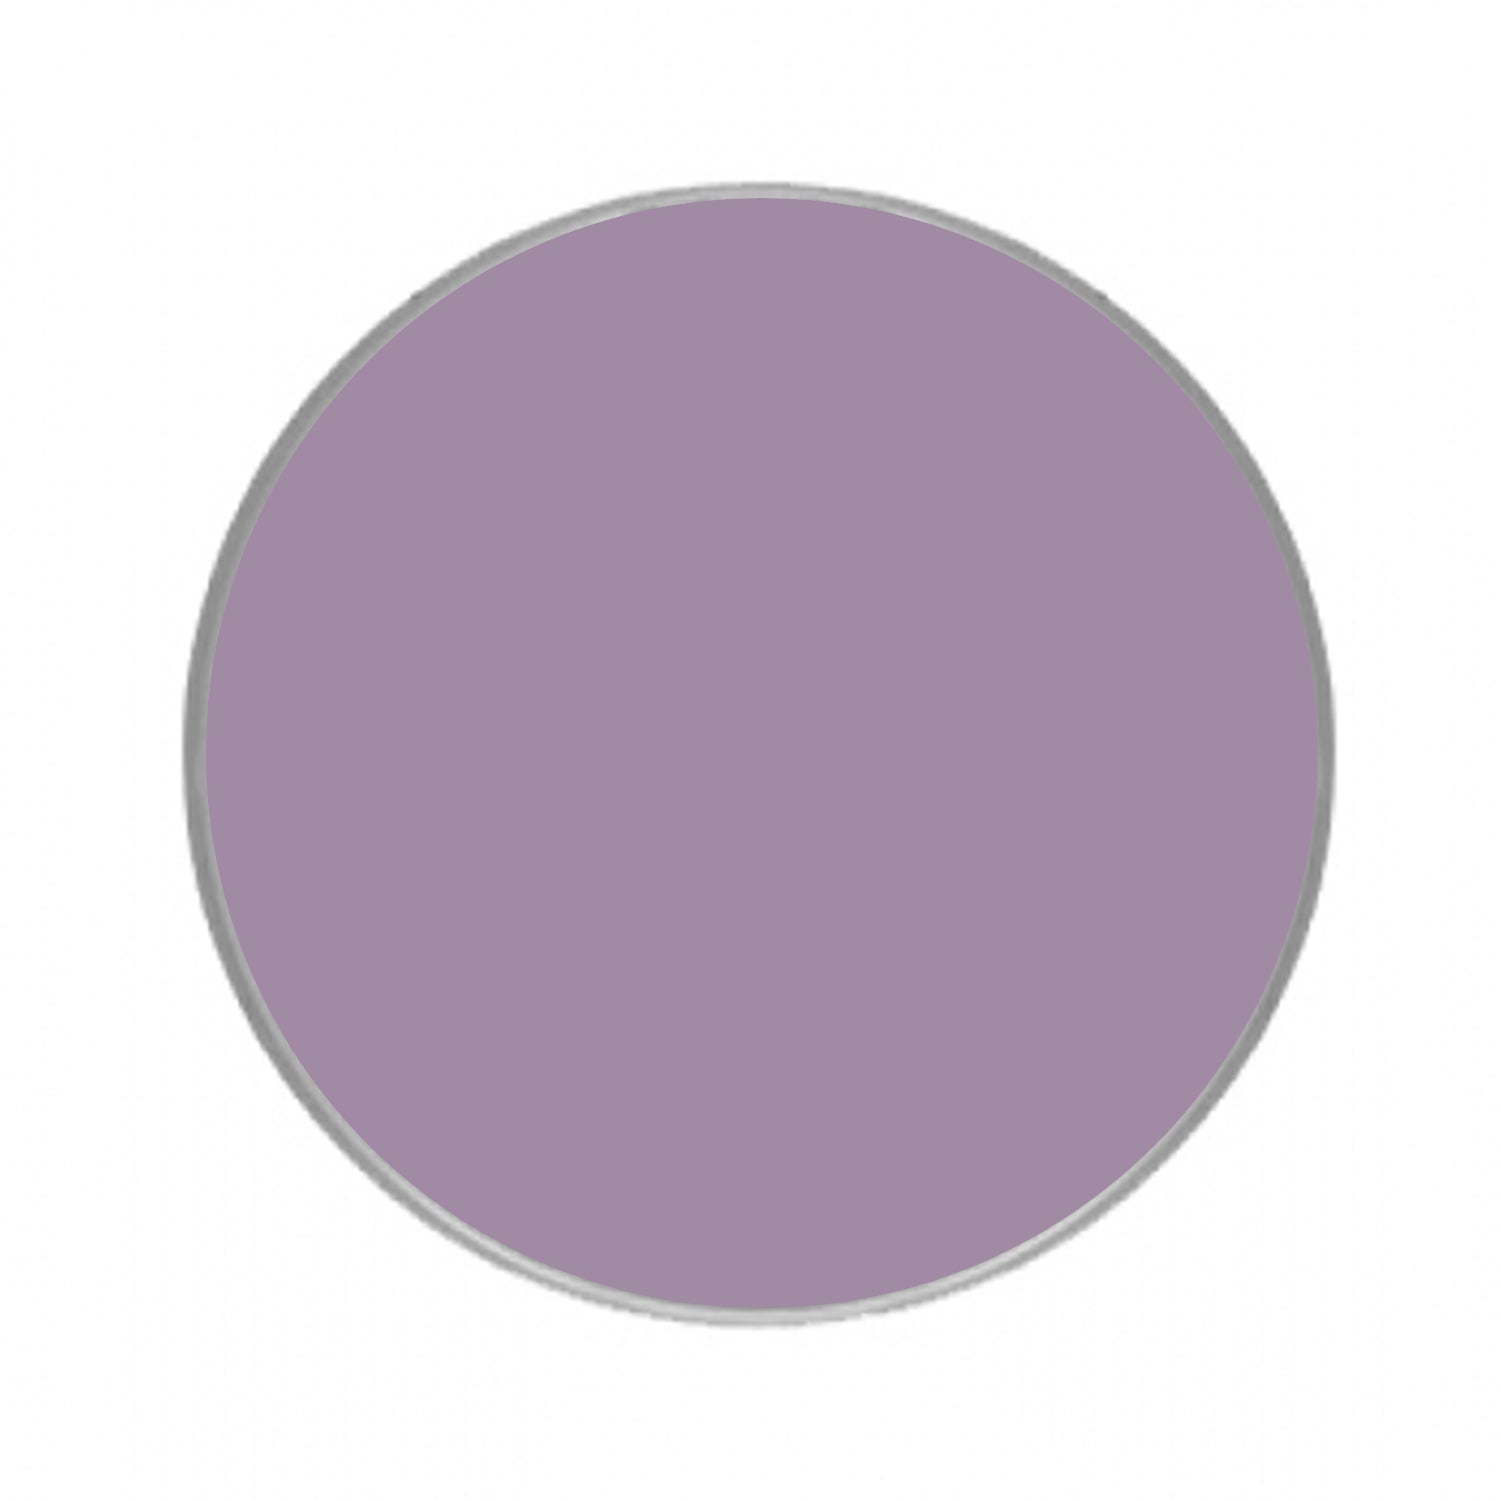 Kryolan Aquacolor Purple Face Paints - Light Purple 482 (30 ml)